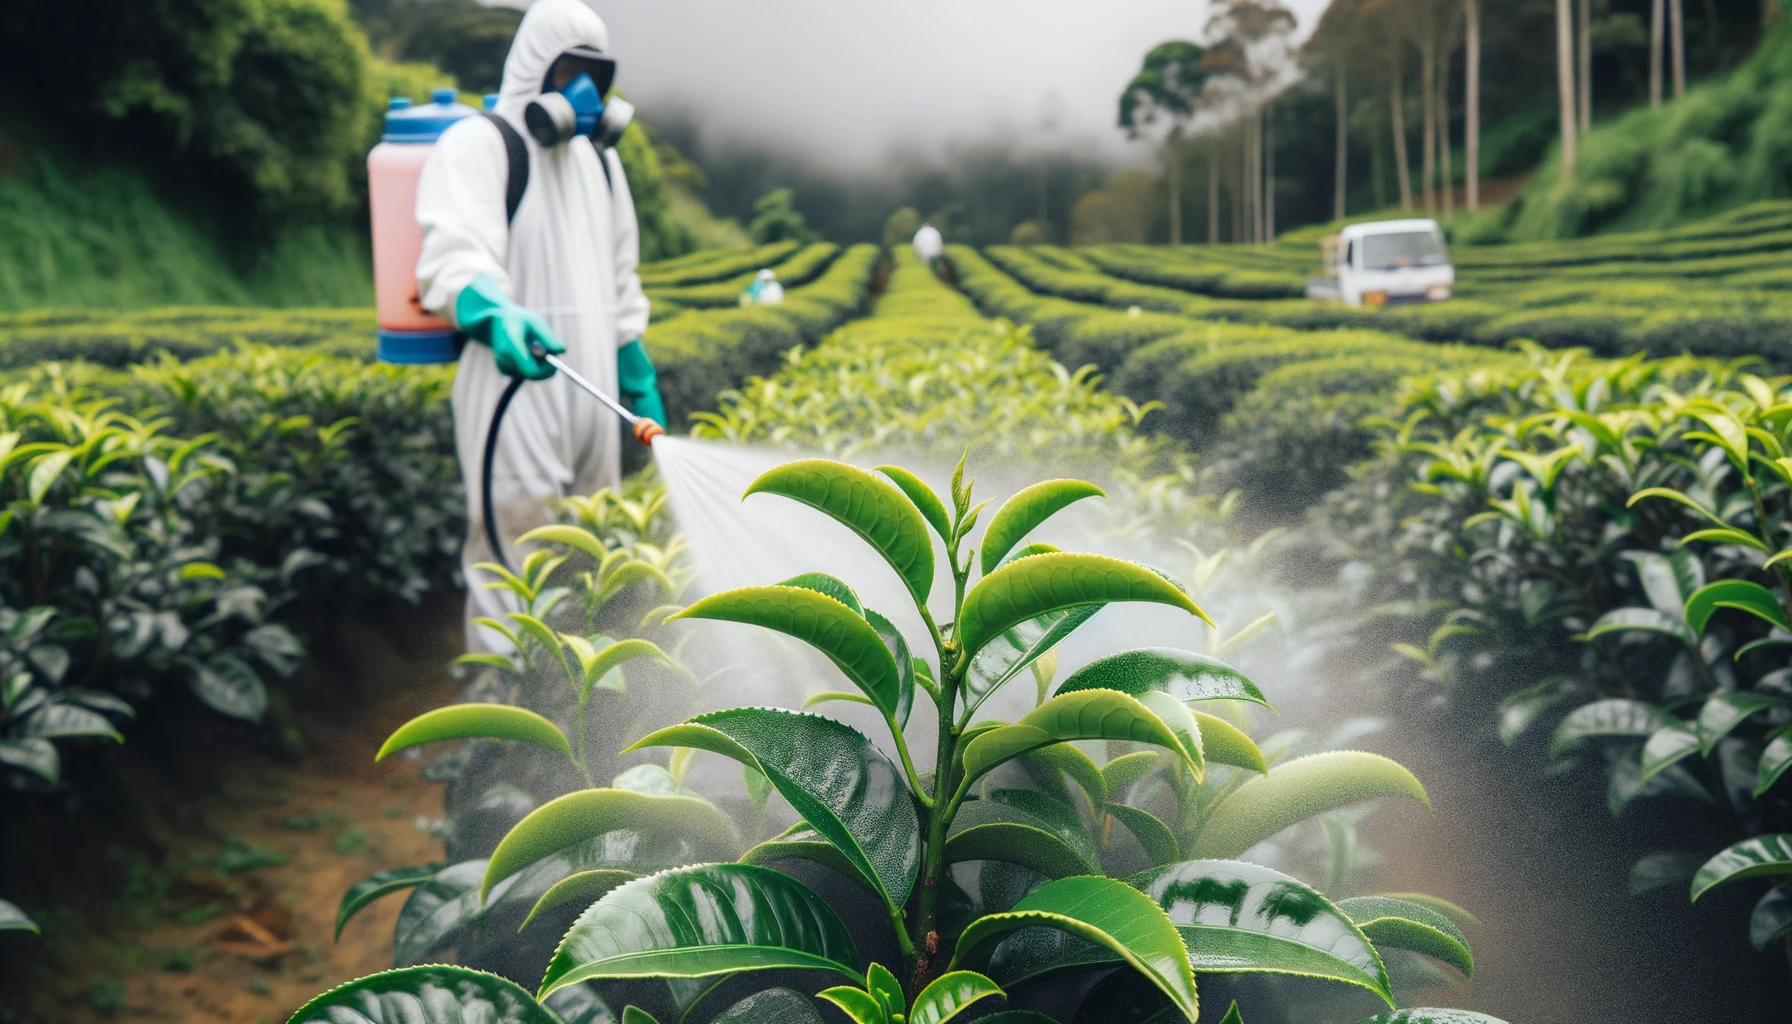 Trabajador con equipo de protección rociando productos químicos sobre plantas de camelia sinensis, lo que significa agricultura no orgánica.